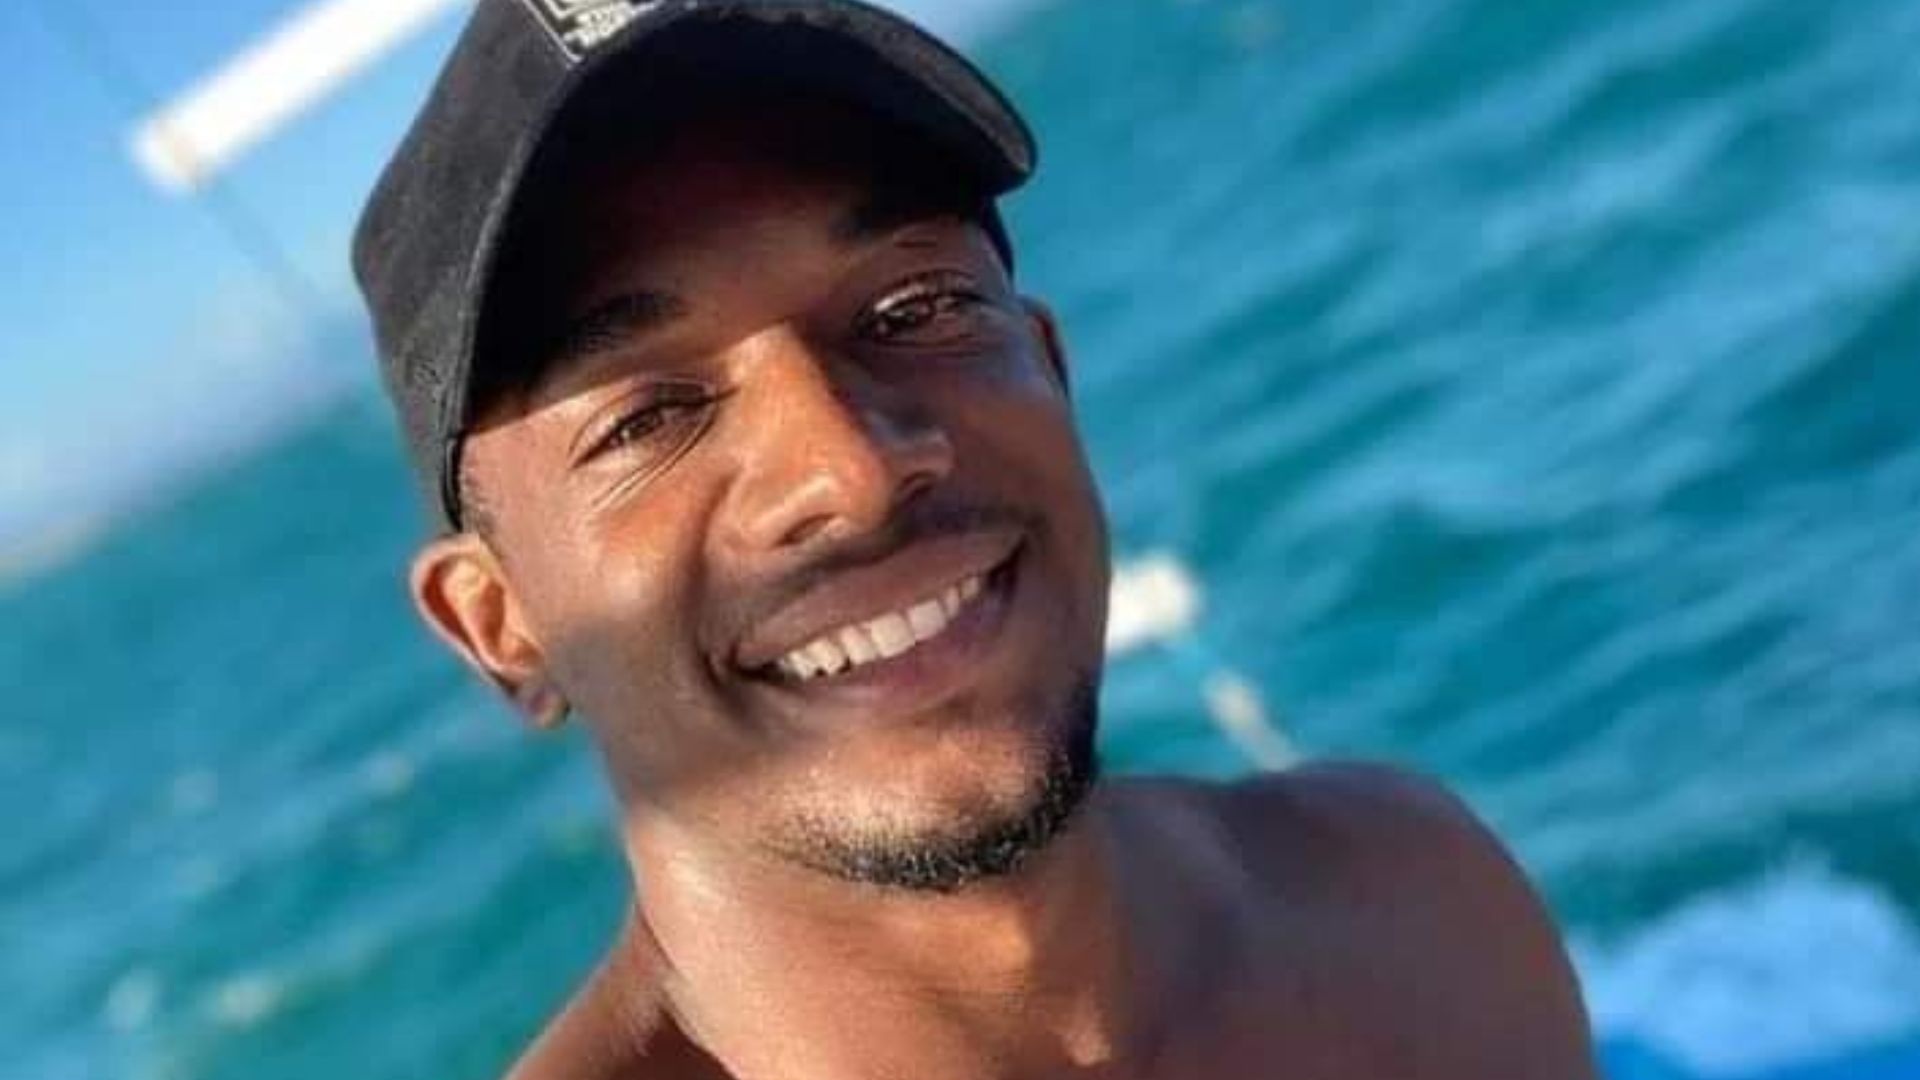 Luiz Cláudio Passos, de 24 anos, não resistiu aos ferimentos do acidente ocorrido no dia 18 de fevereiro, em Barra do Sahy